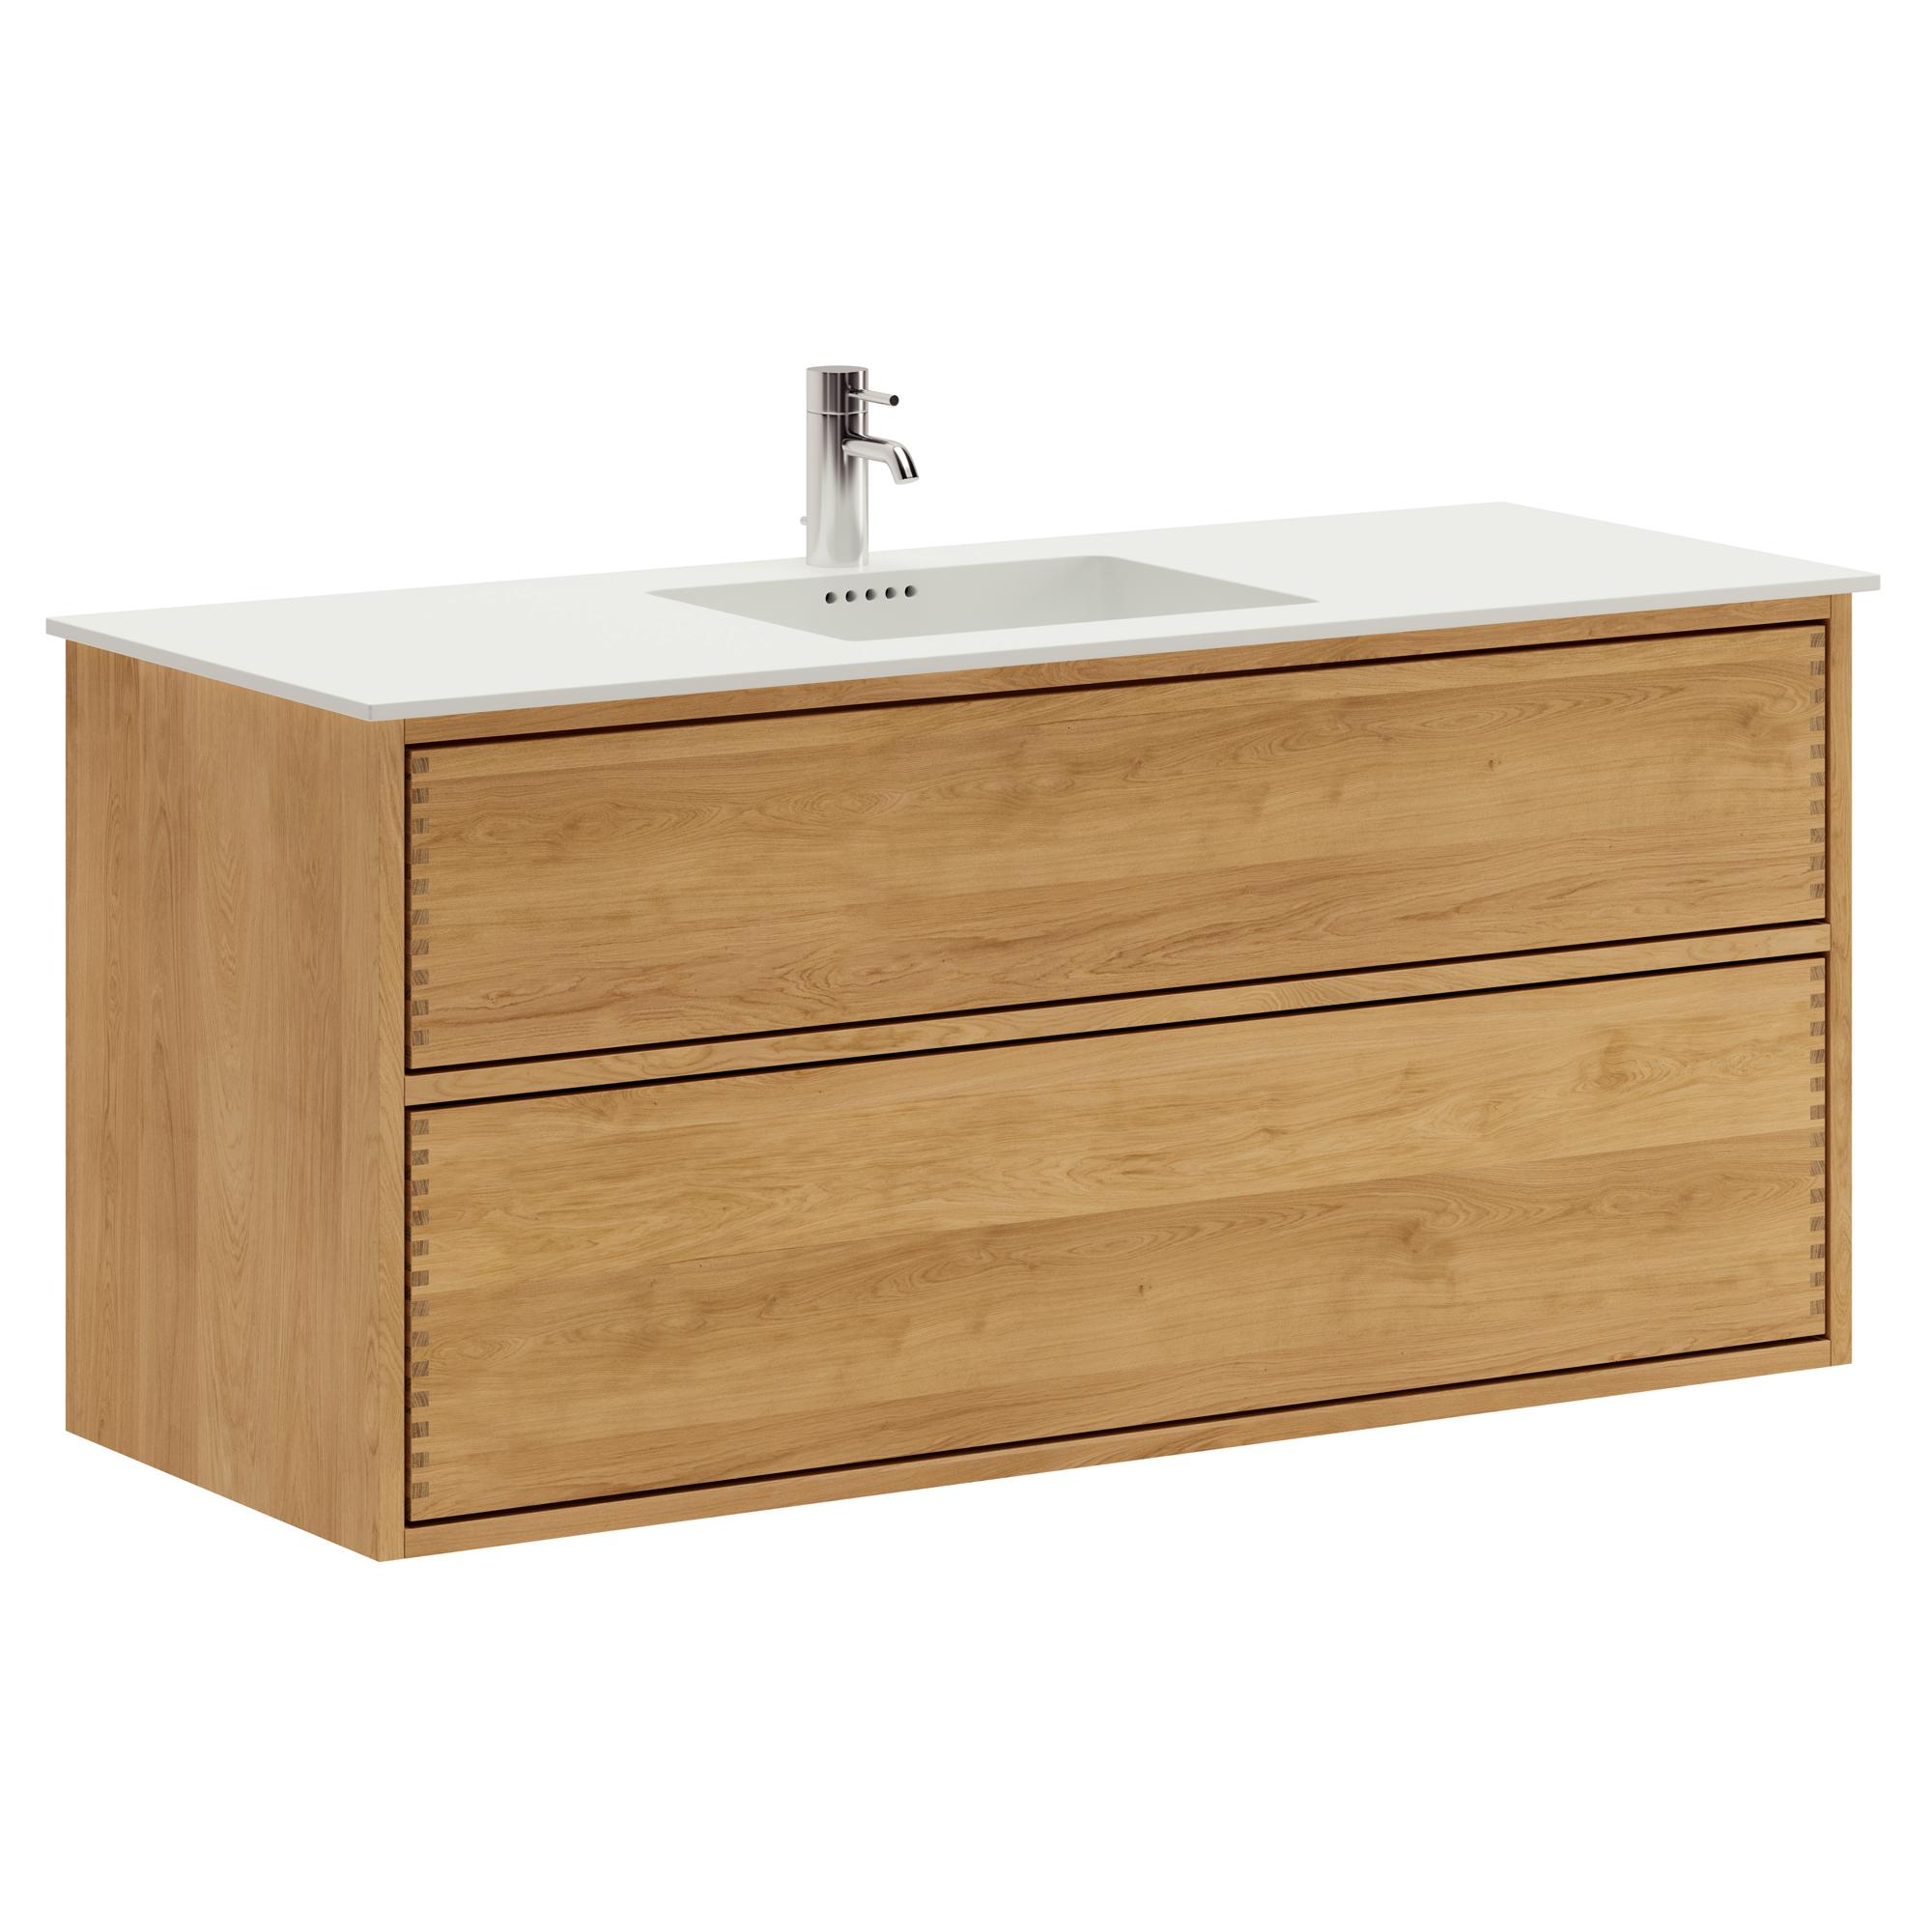 120 cm Just Wood Push Badezimmermöbel mit 2 Schubladen und Solid Surface-Waschbecken